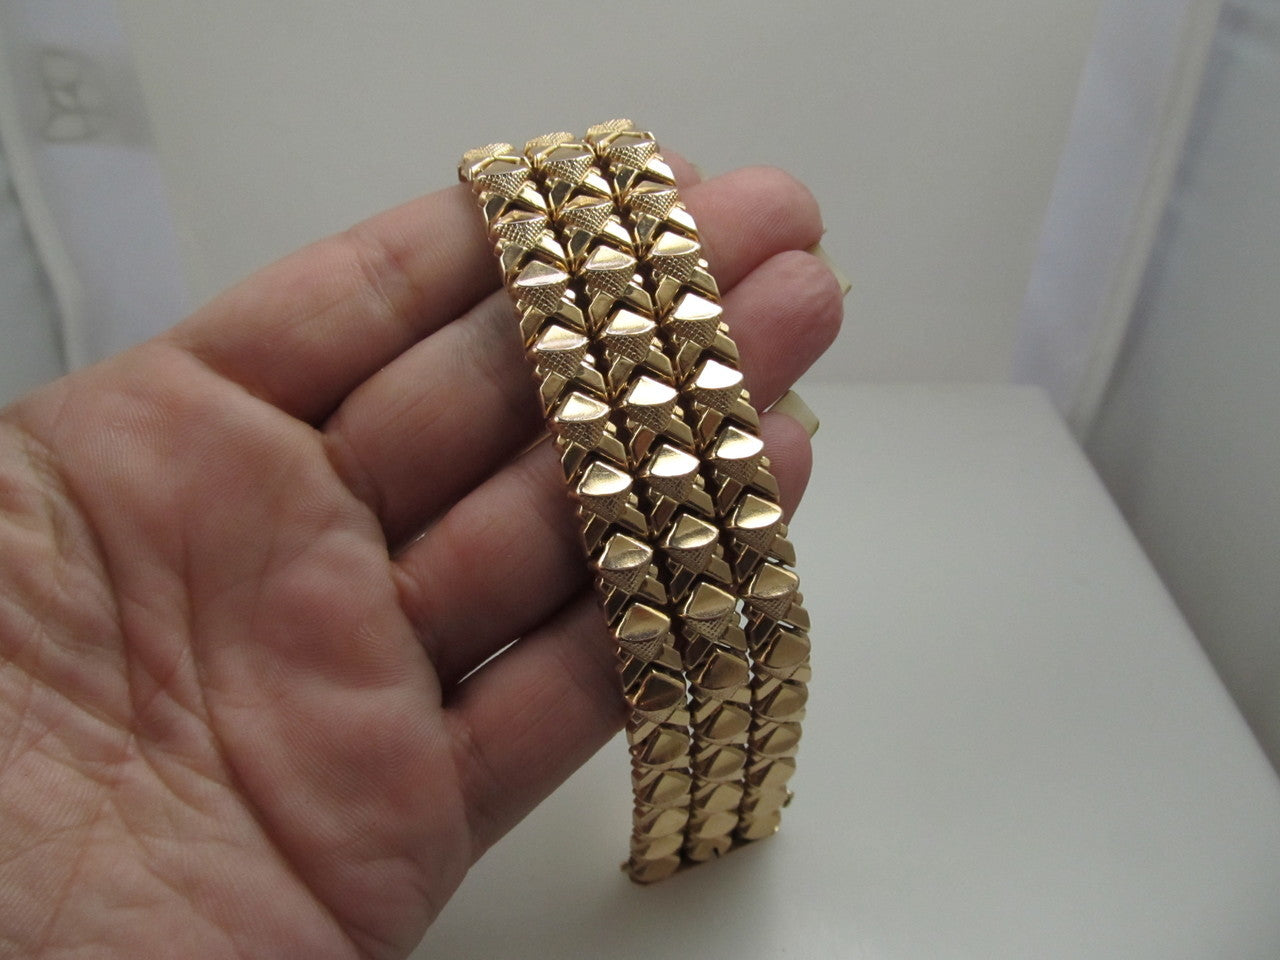 14k rose gold link bracelet, circa 1940